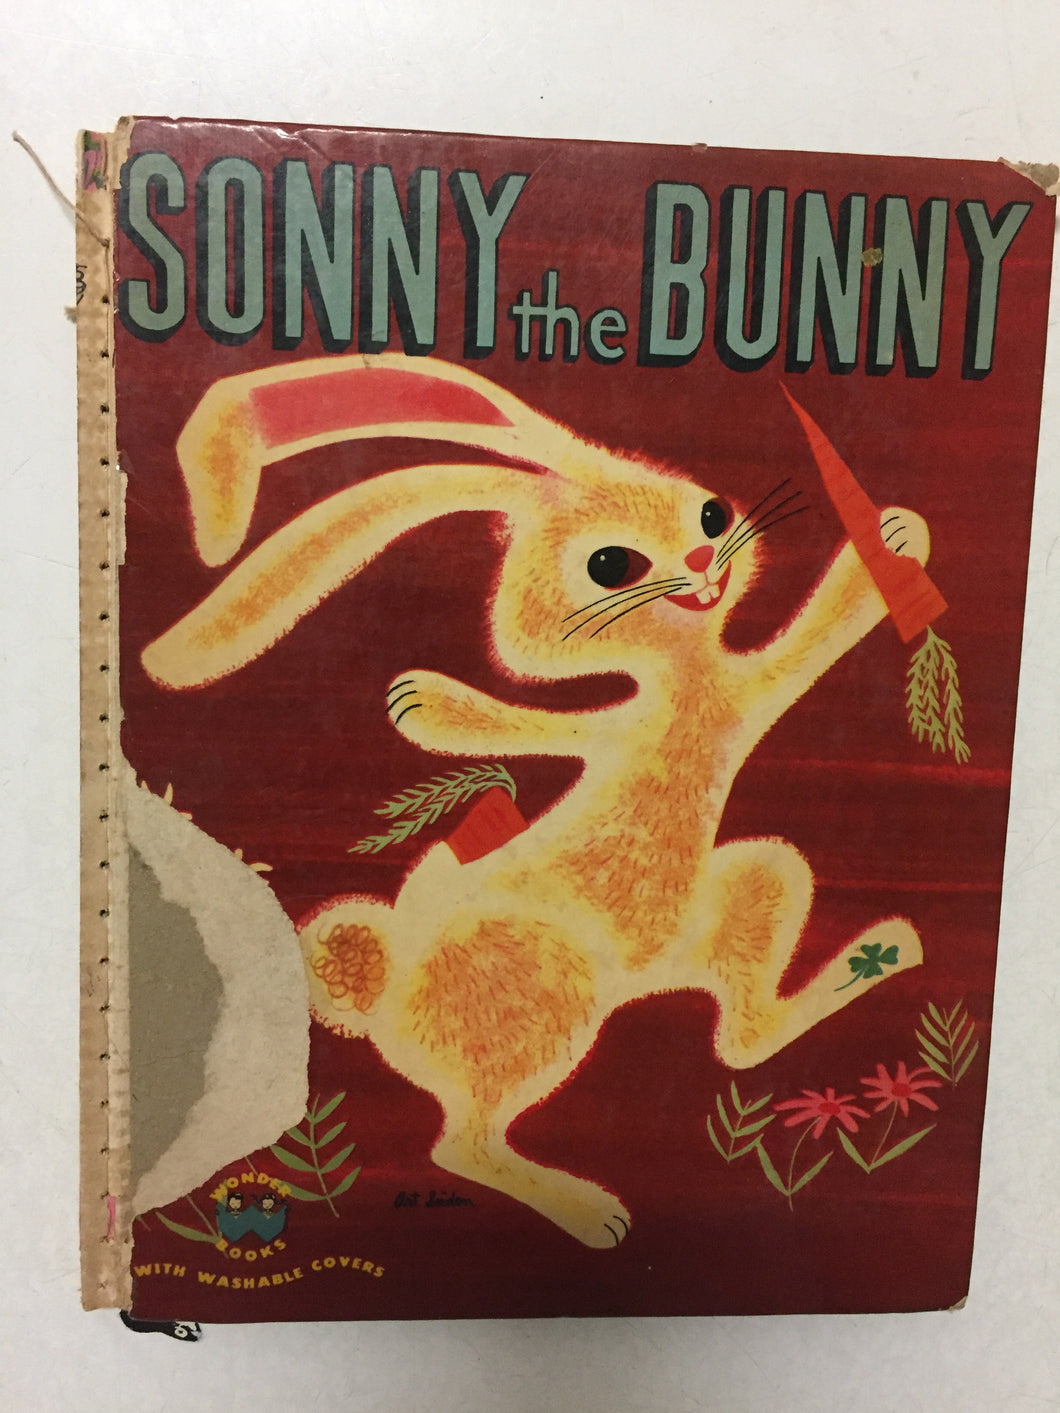 Sonny the Bunny - Slickcatbooks